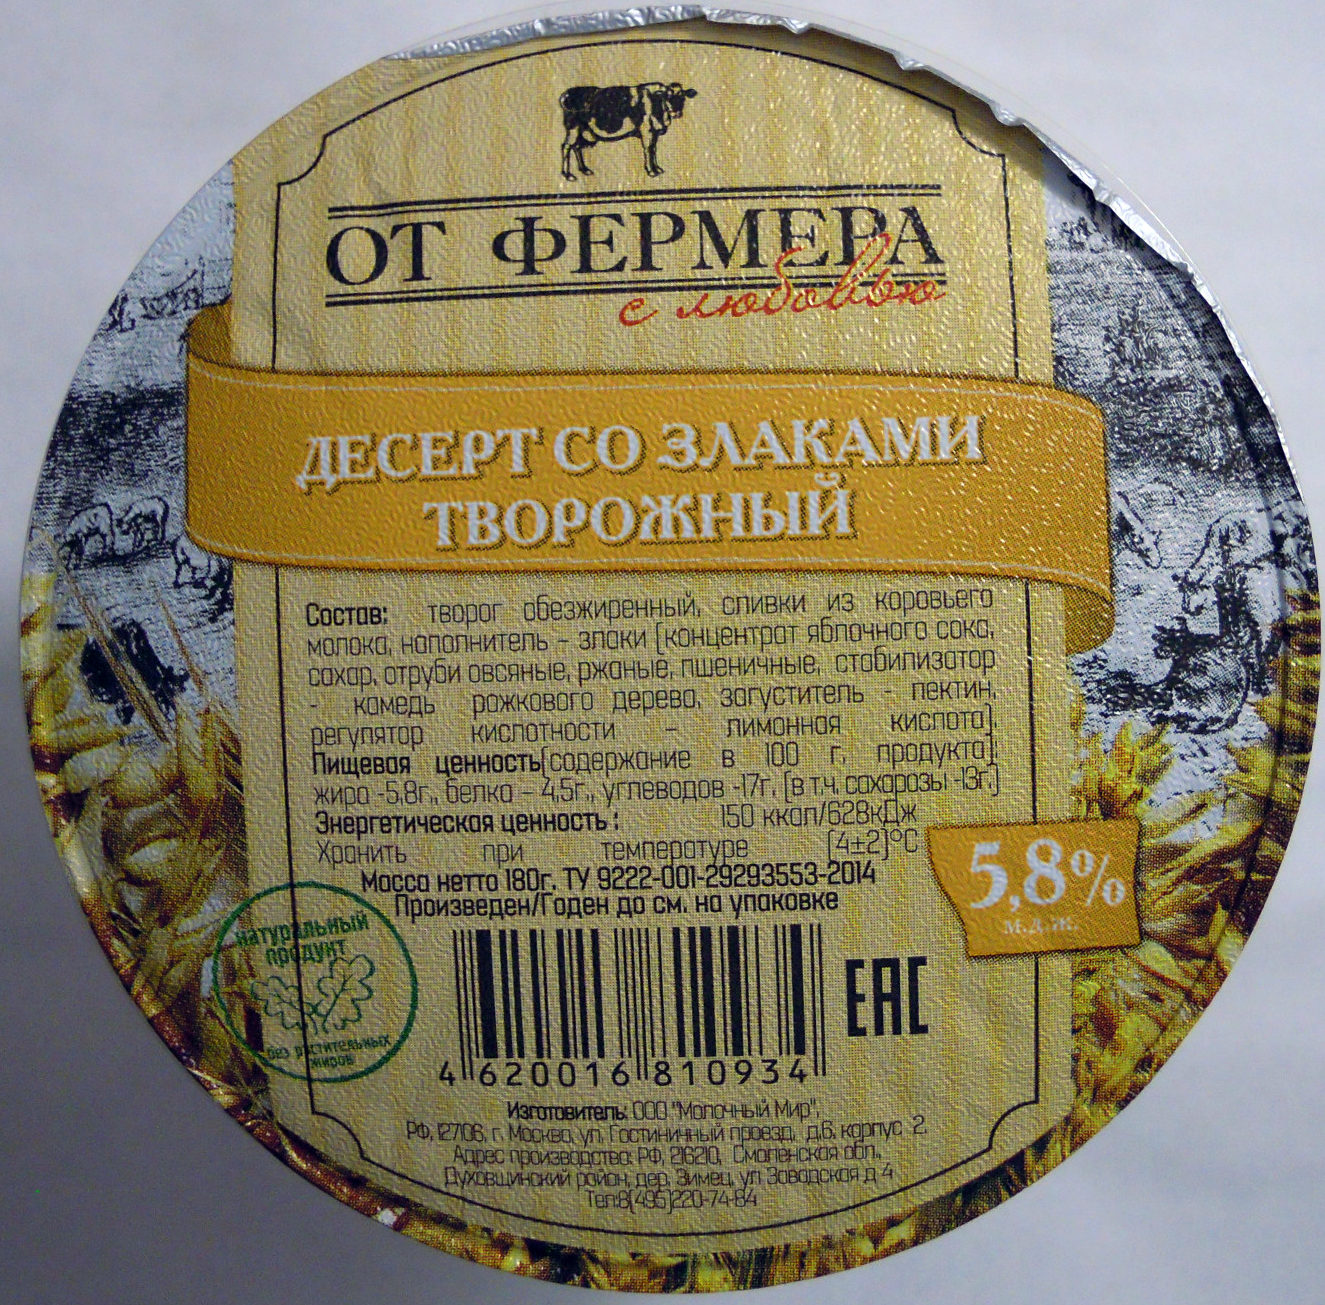 Десерт со злаками творожный 5,8 % - Product - ru